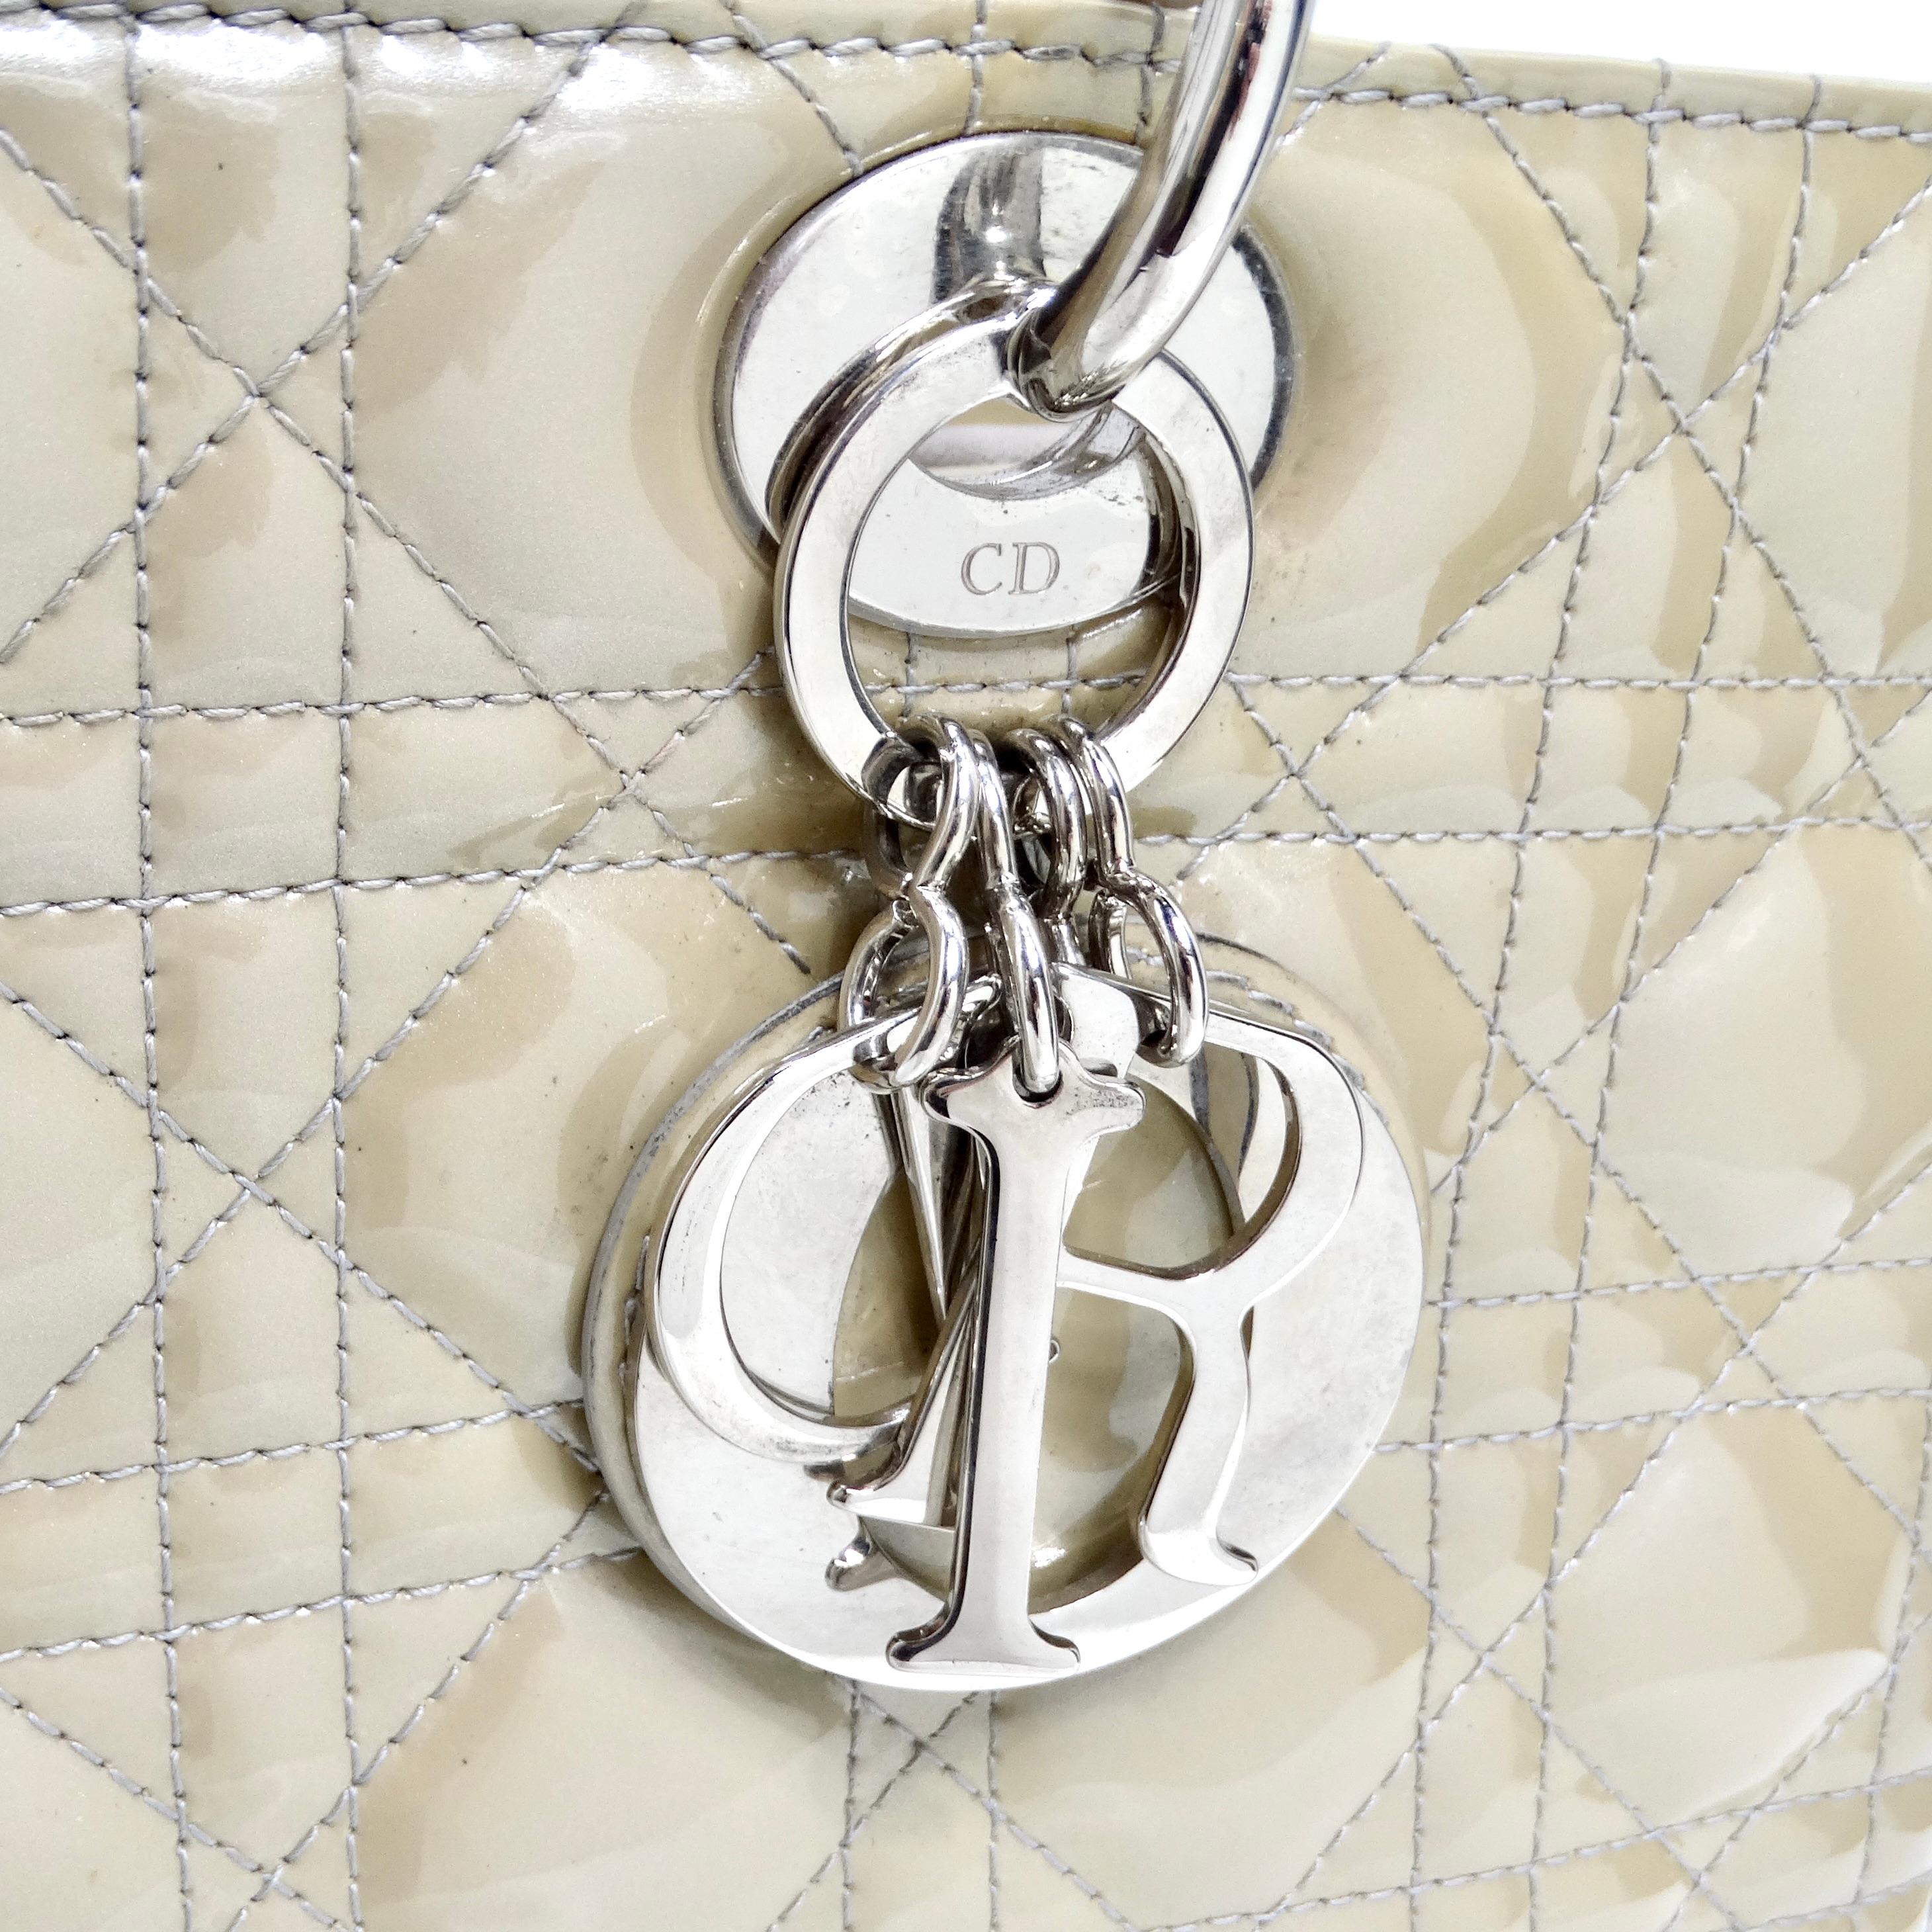 Die Christian Dior Patent Cannage Large Lady Dior in Beige ist eine zeitlose und elegante Tasche, die Raffinesse ausstrahlt.

Diese Tasche aus luxuriösem Lackleder in einem sanften Beigeton ist mit dem für Dior charakteristischen geometrischen,